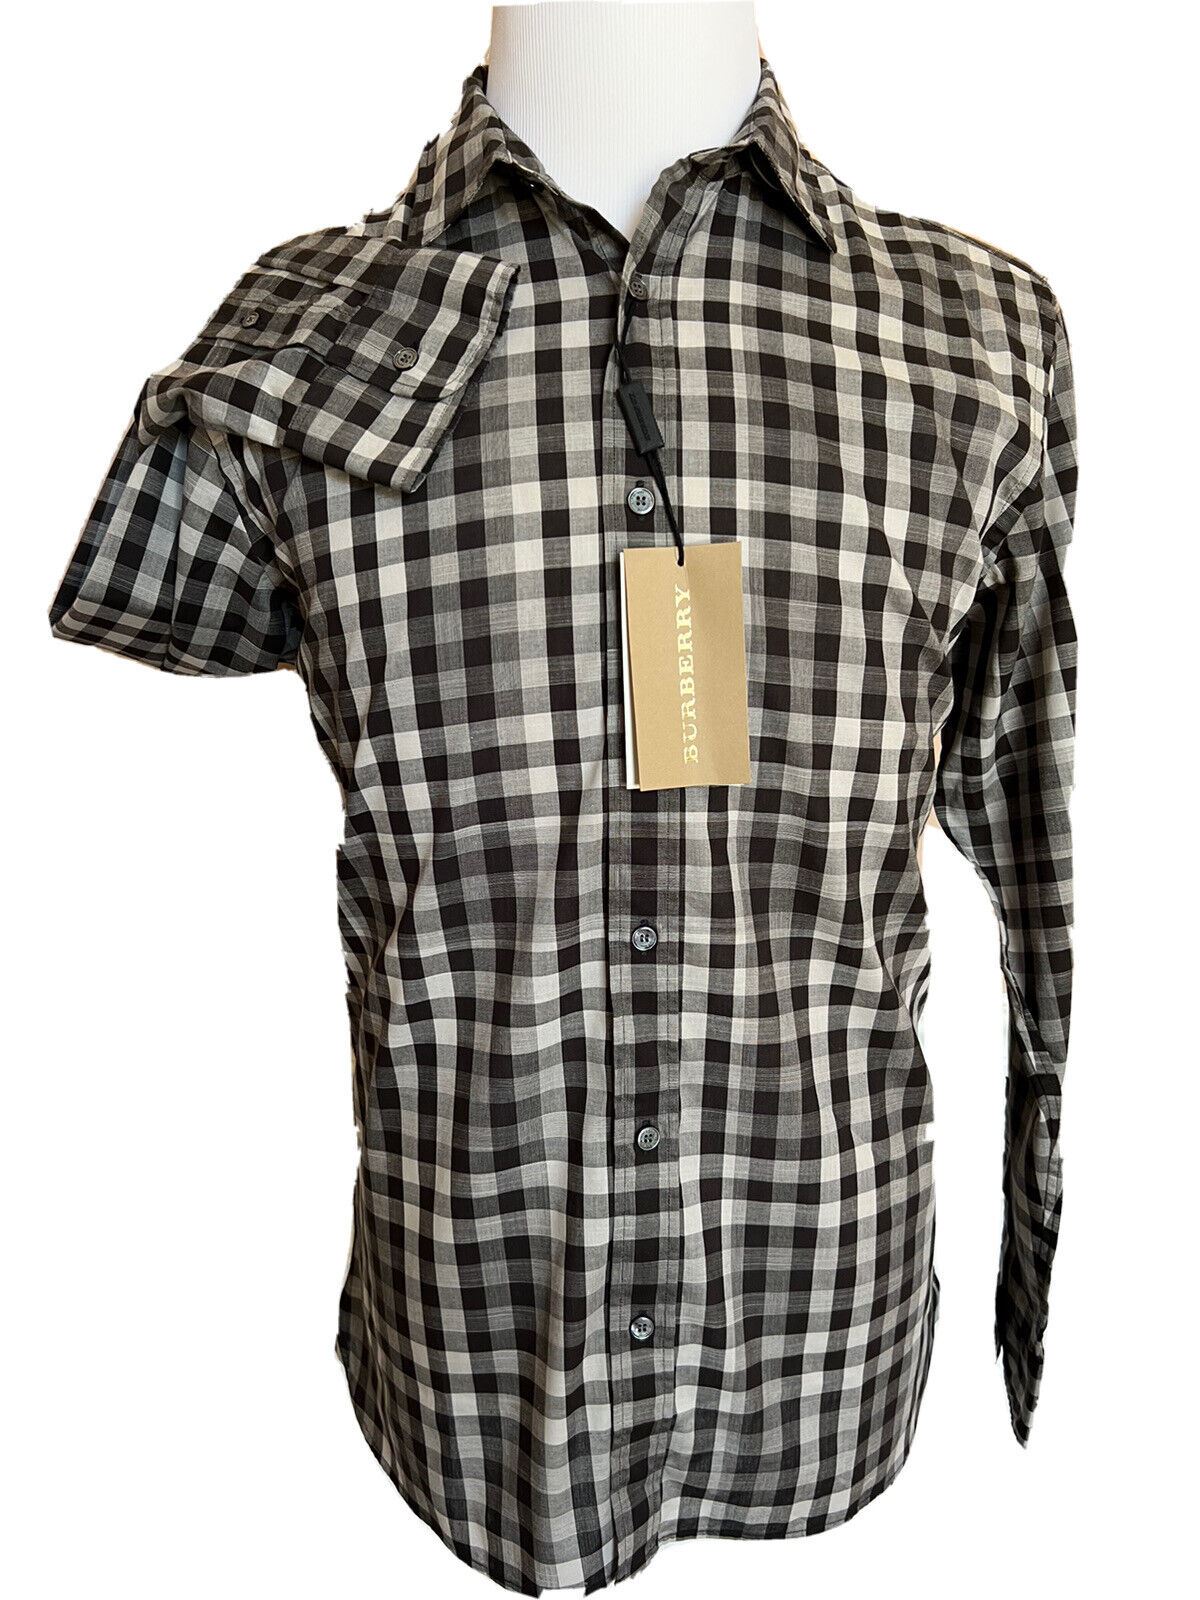 Neu mit Etikett: 250 $ Burberry Herren-Hemd mit Knöpfen aus schwarzer Baumwolle, mittelgroß, 4015368